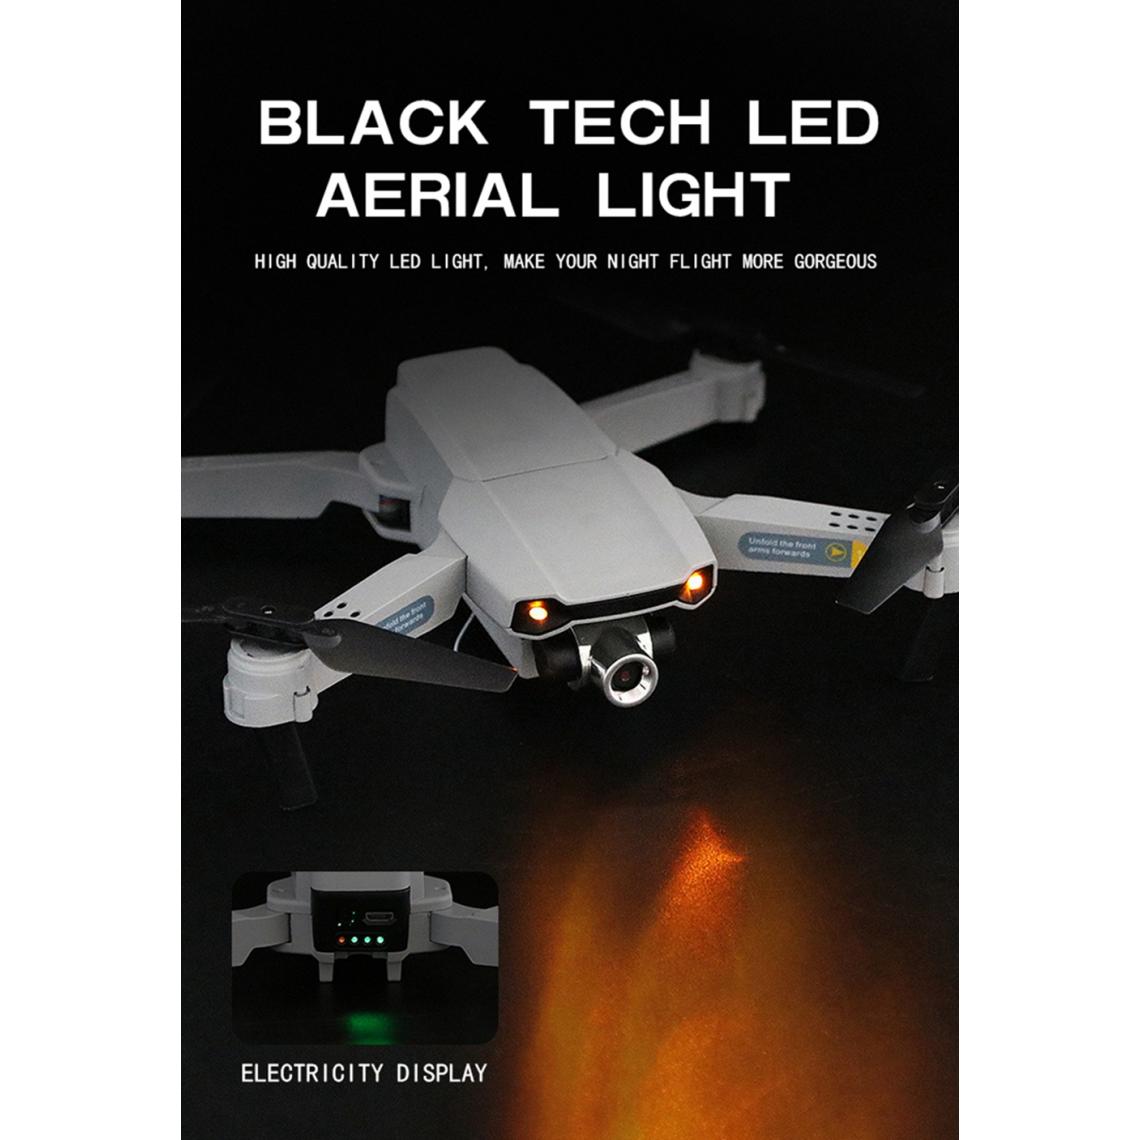 Universal - X2 RC drone avec caméra HD FPV drone 4K WiFi quadcopter caméra drone mode de maintien de l'altitude chaude LED pliable RC utilisable jouet | RC quadcopter(Le noir) - Drone